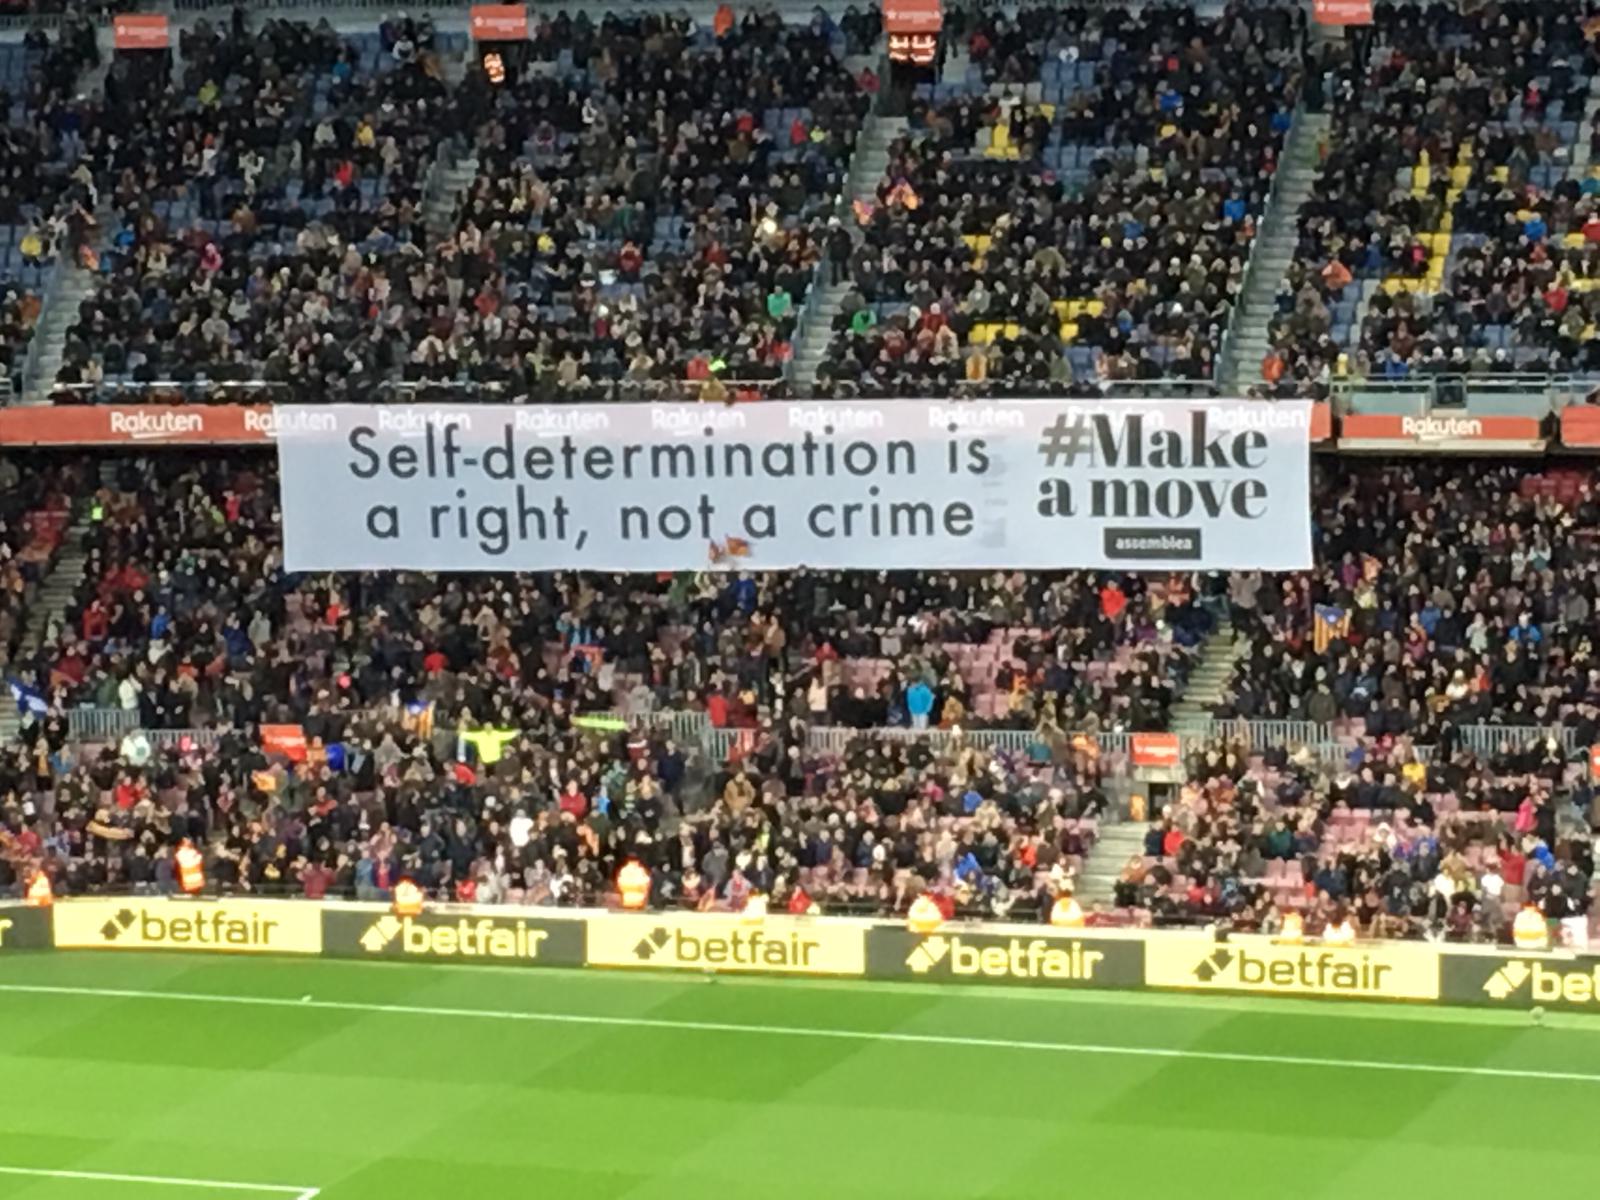 "La autodeterminación es un derecho, no un delito": la pancarta reivindicativa del Camp Nou